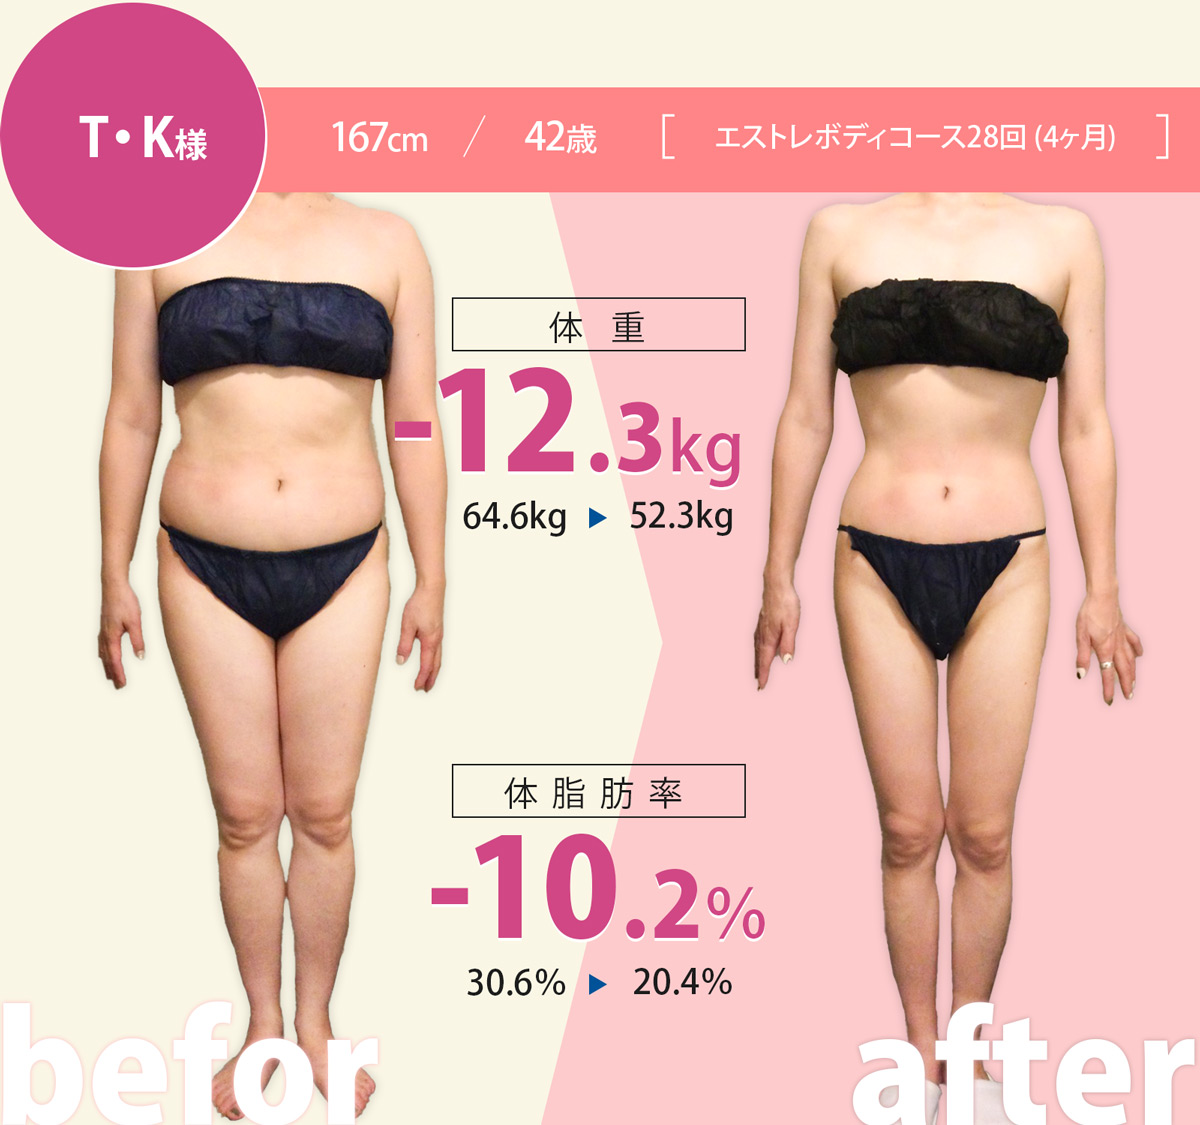 TK様 167cm/42歳エストレボディーコース28回（6ヶ月）、体重-12.3kg、体脂肪率-10.2%